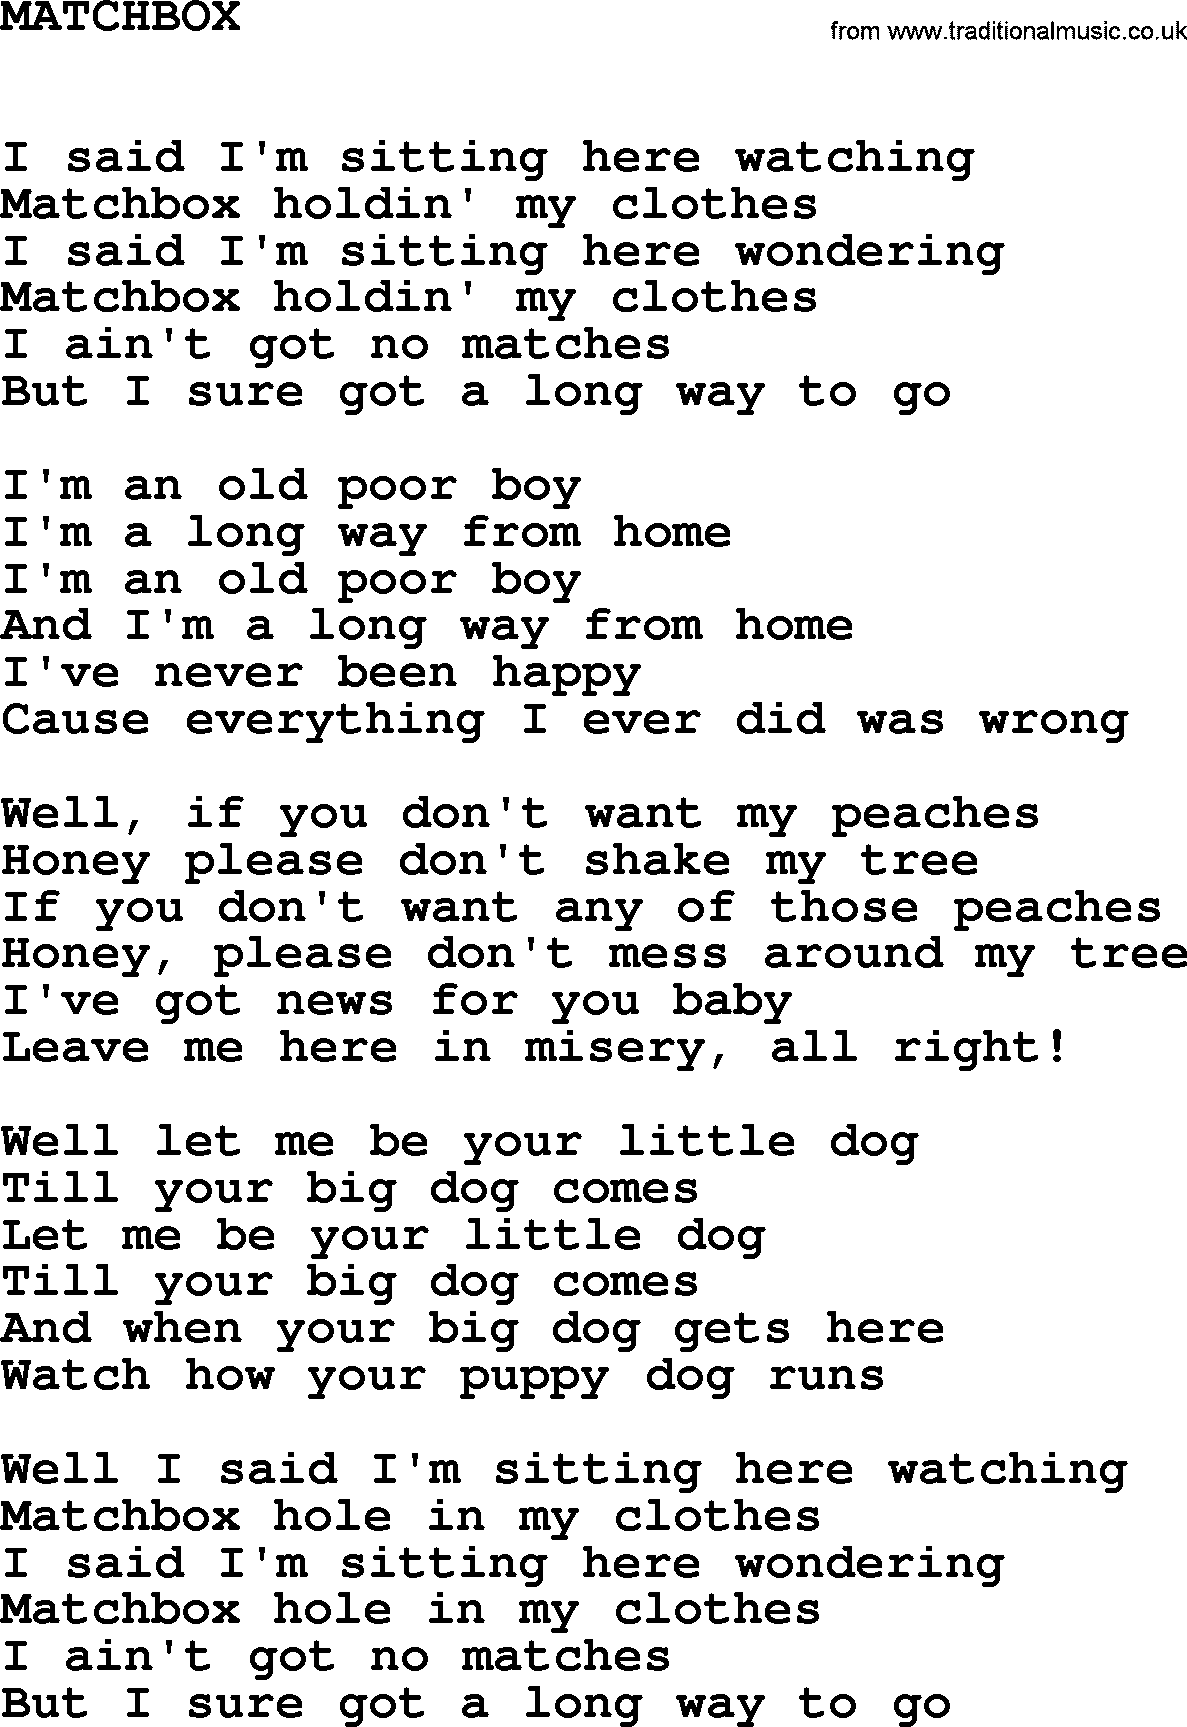 Johnny Cash song Matchbox.txt lyrics